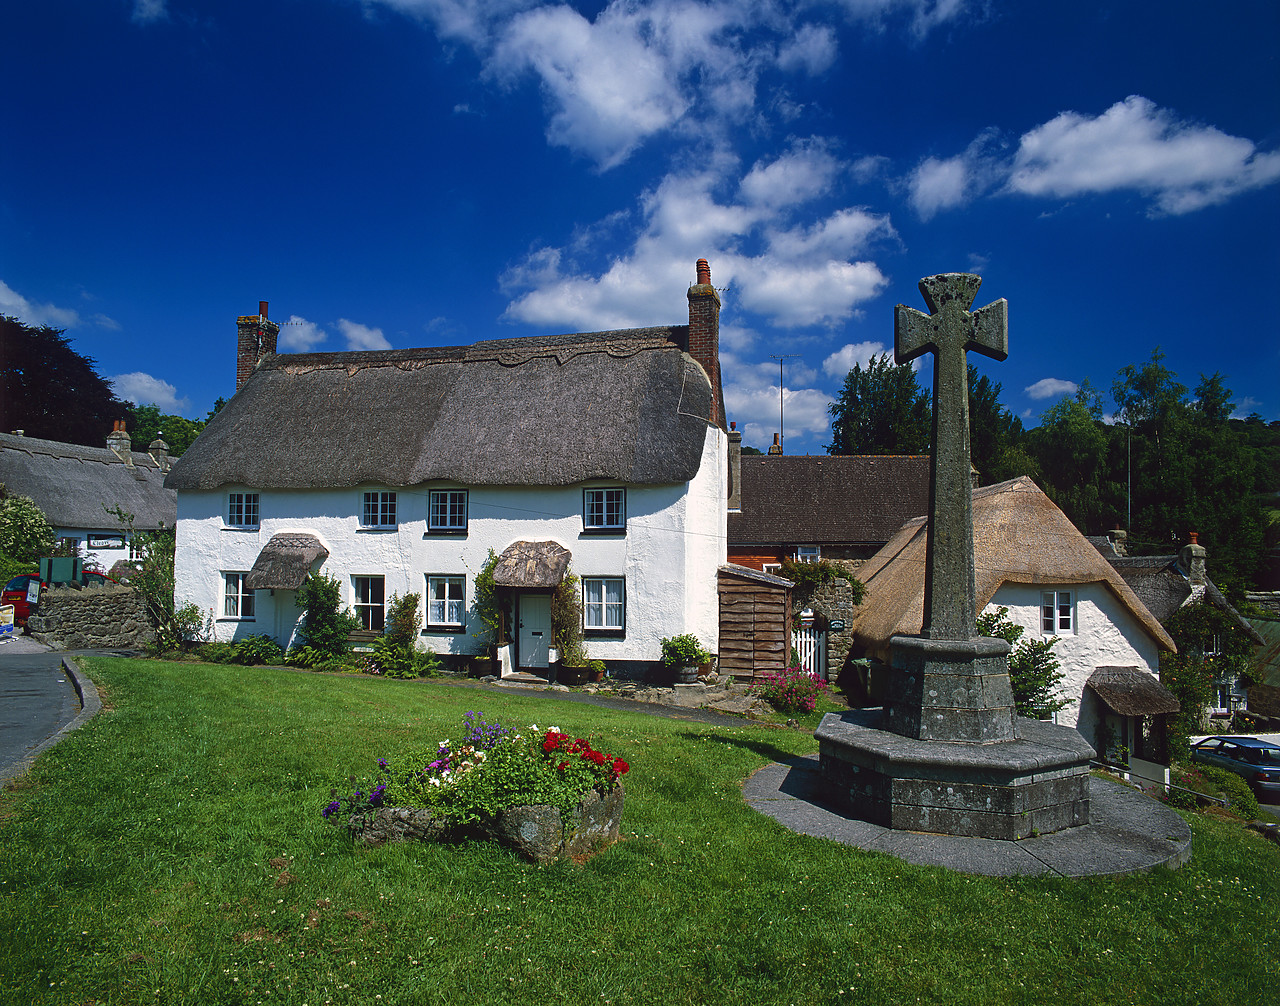 #020639-4 - Thatched Cottages & Village Green, Lustleigh, Devon, England